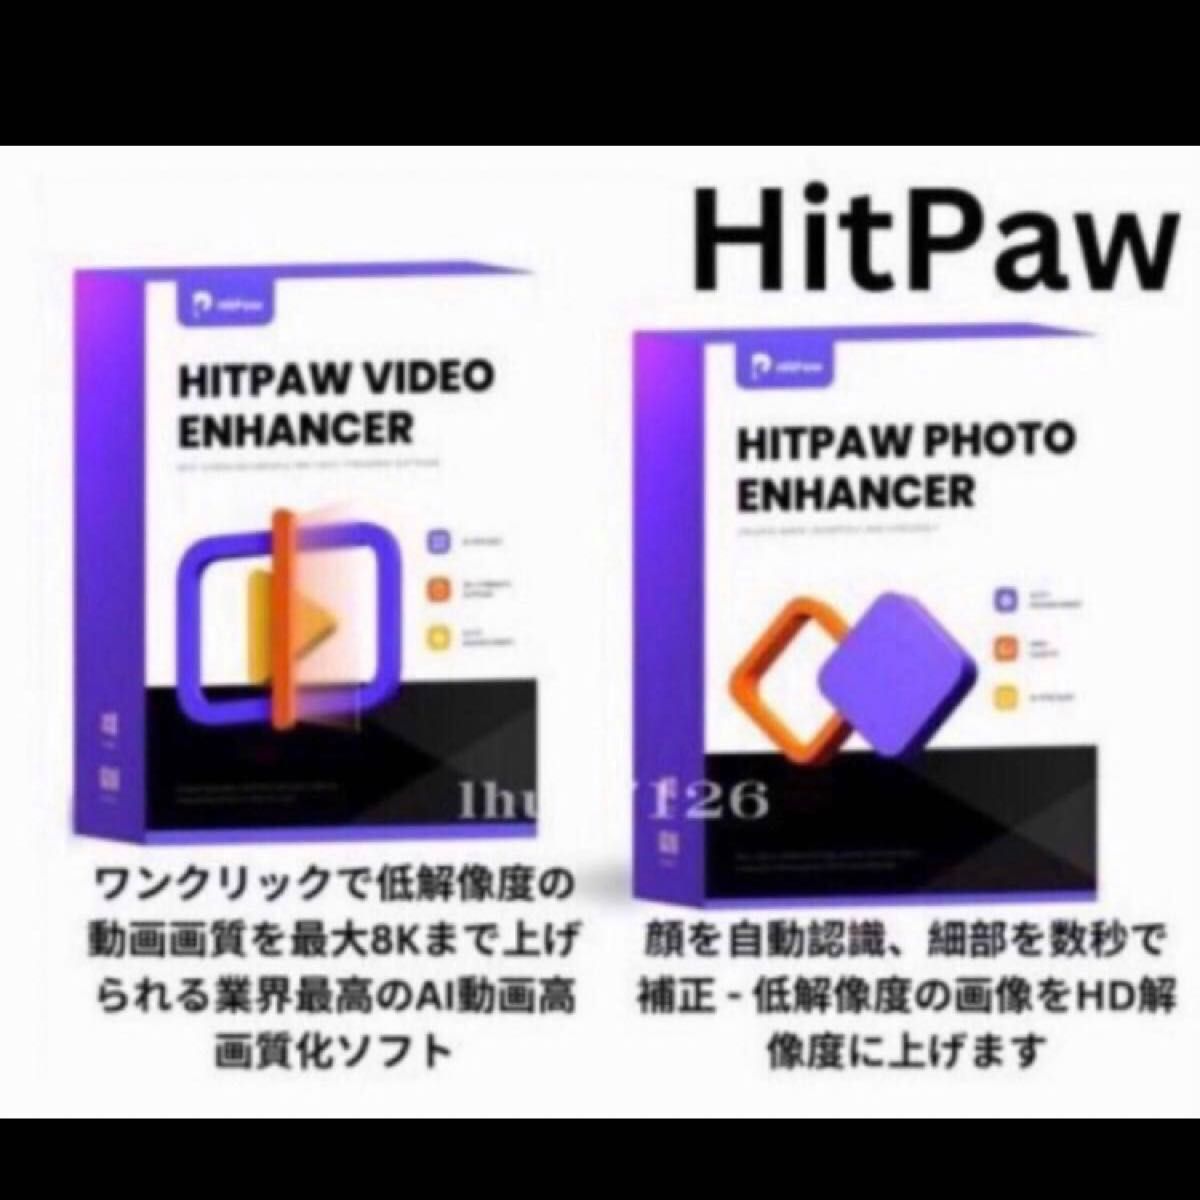 HitPaw Video Enhancer 1.7.0.0 + Photo Enhancer 2.2.3.2 Windows 